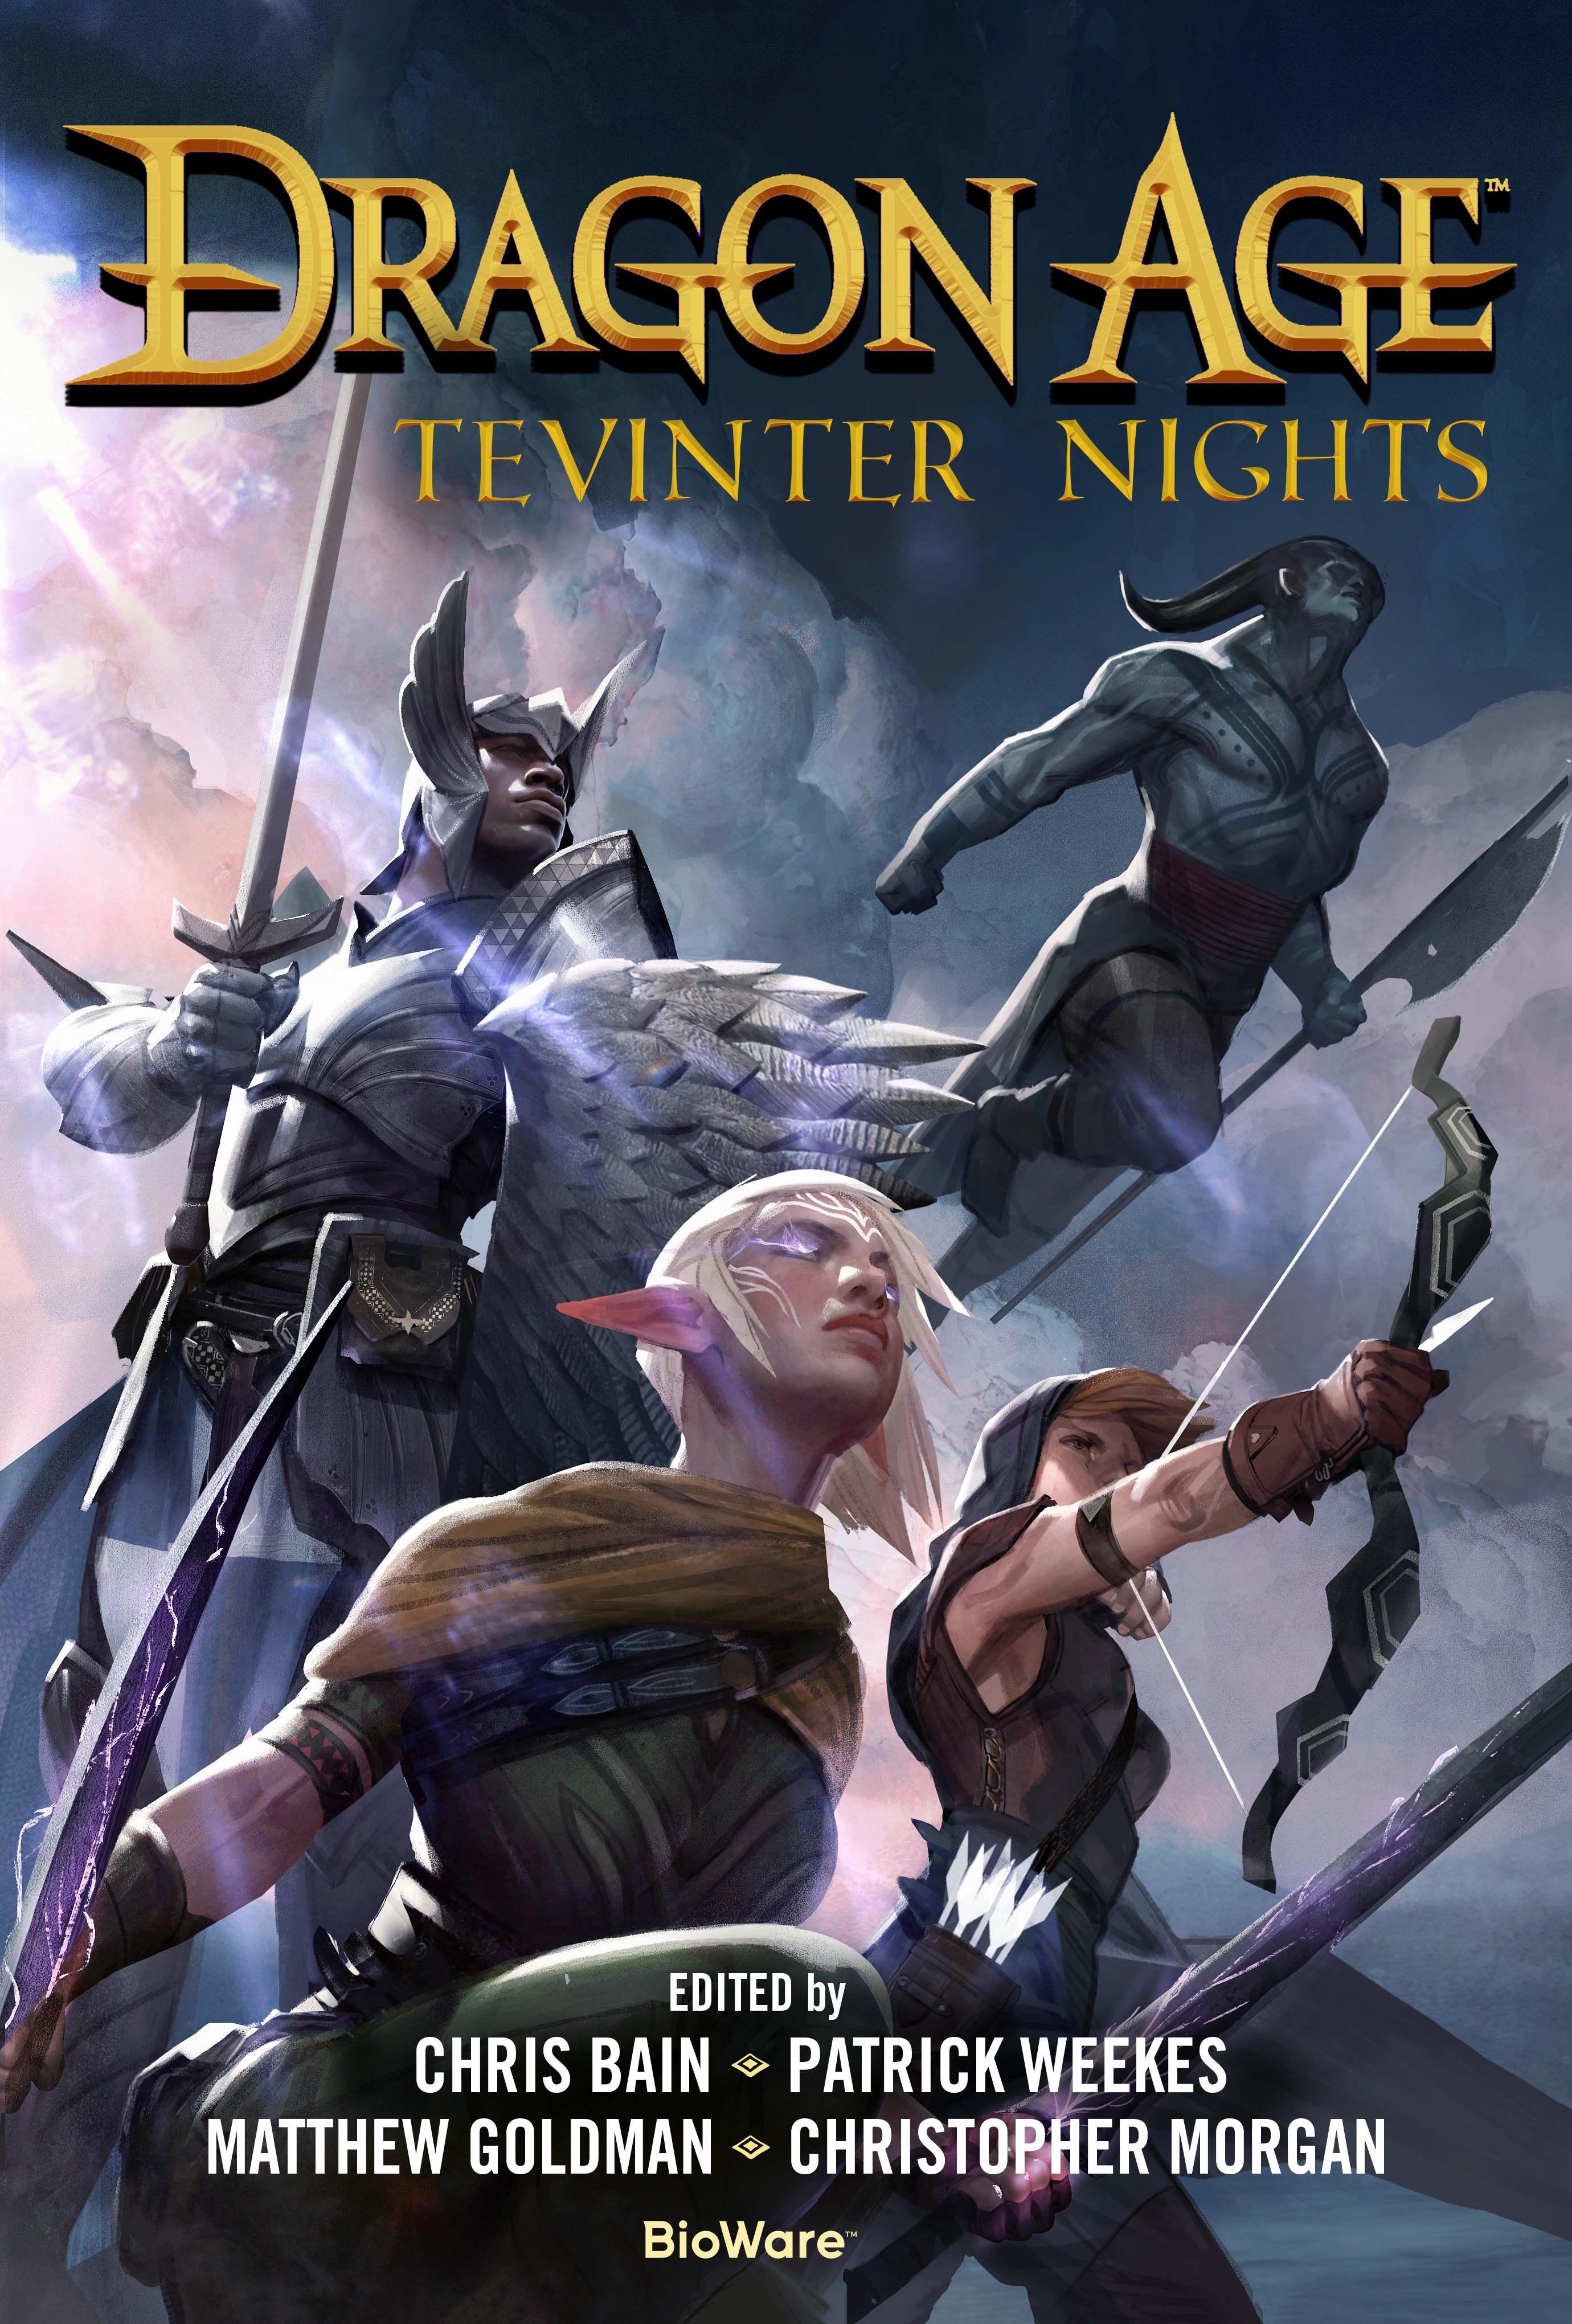 Dragon Age: Tevinter Nights by Patrick Weekes